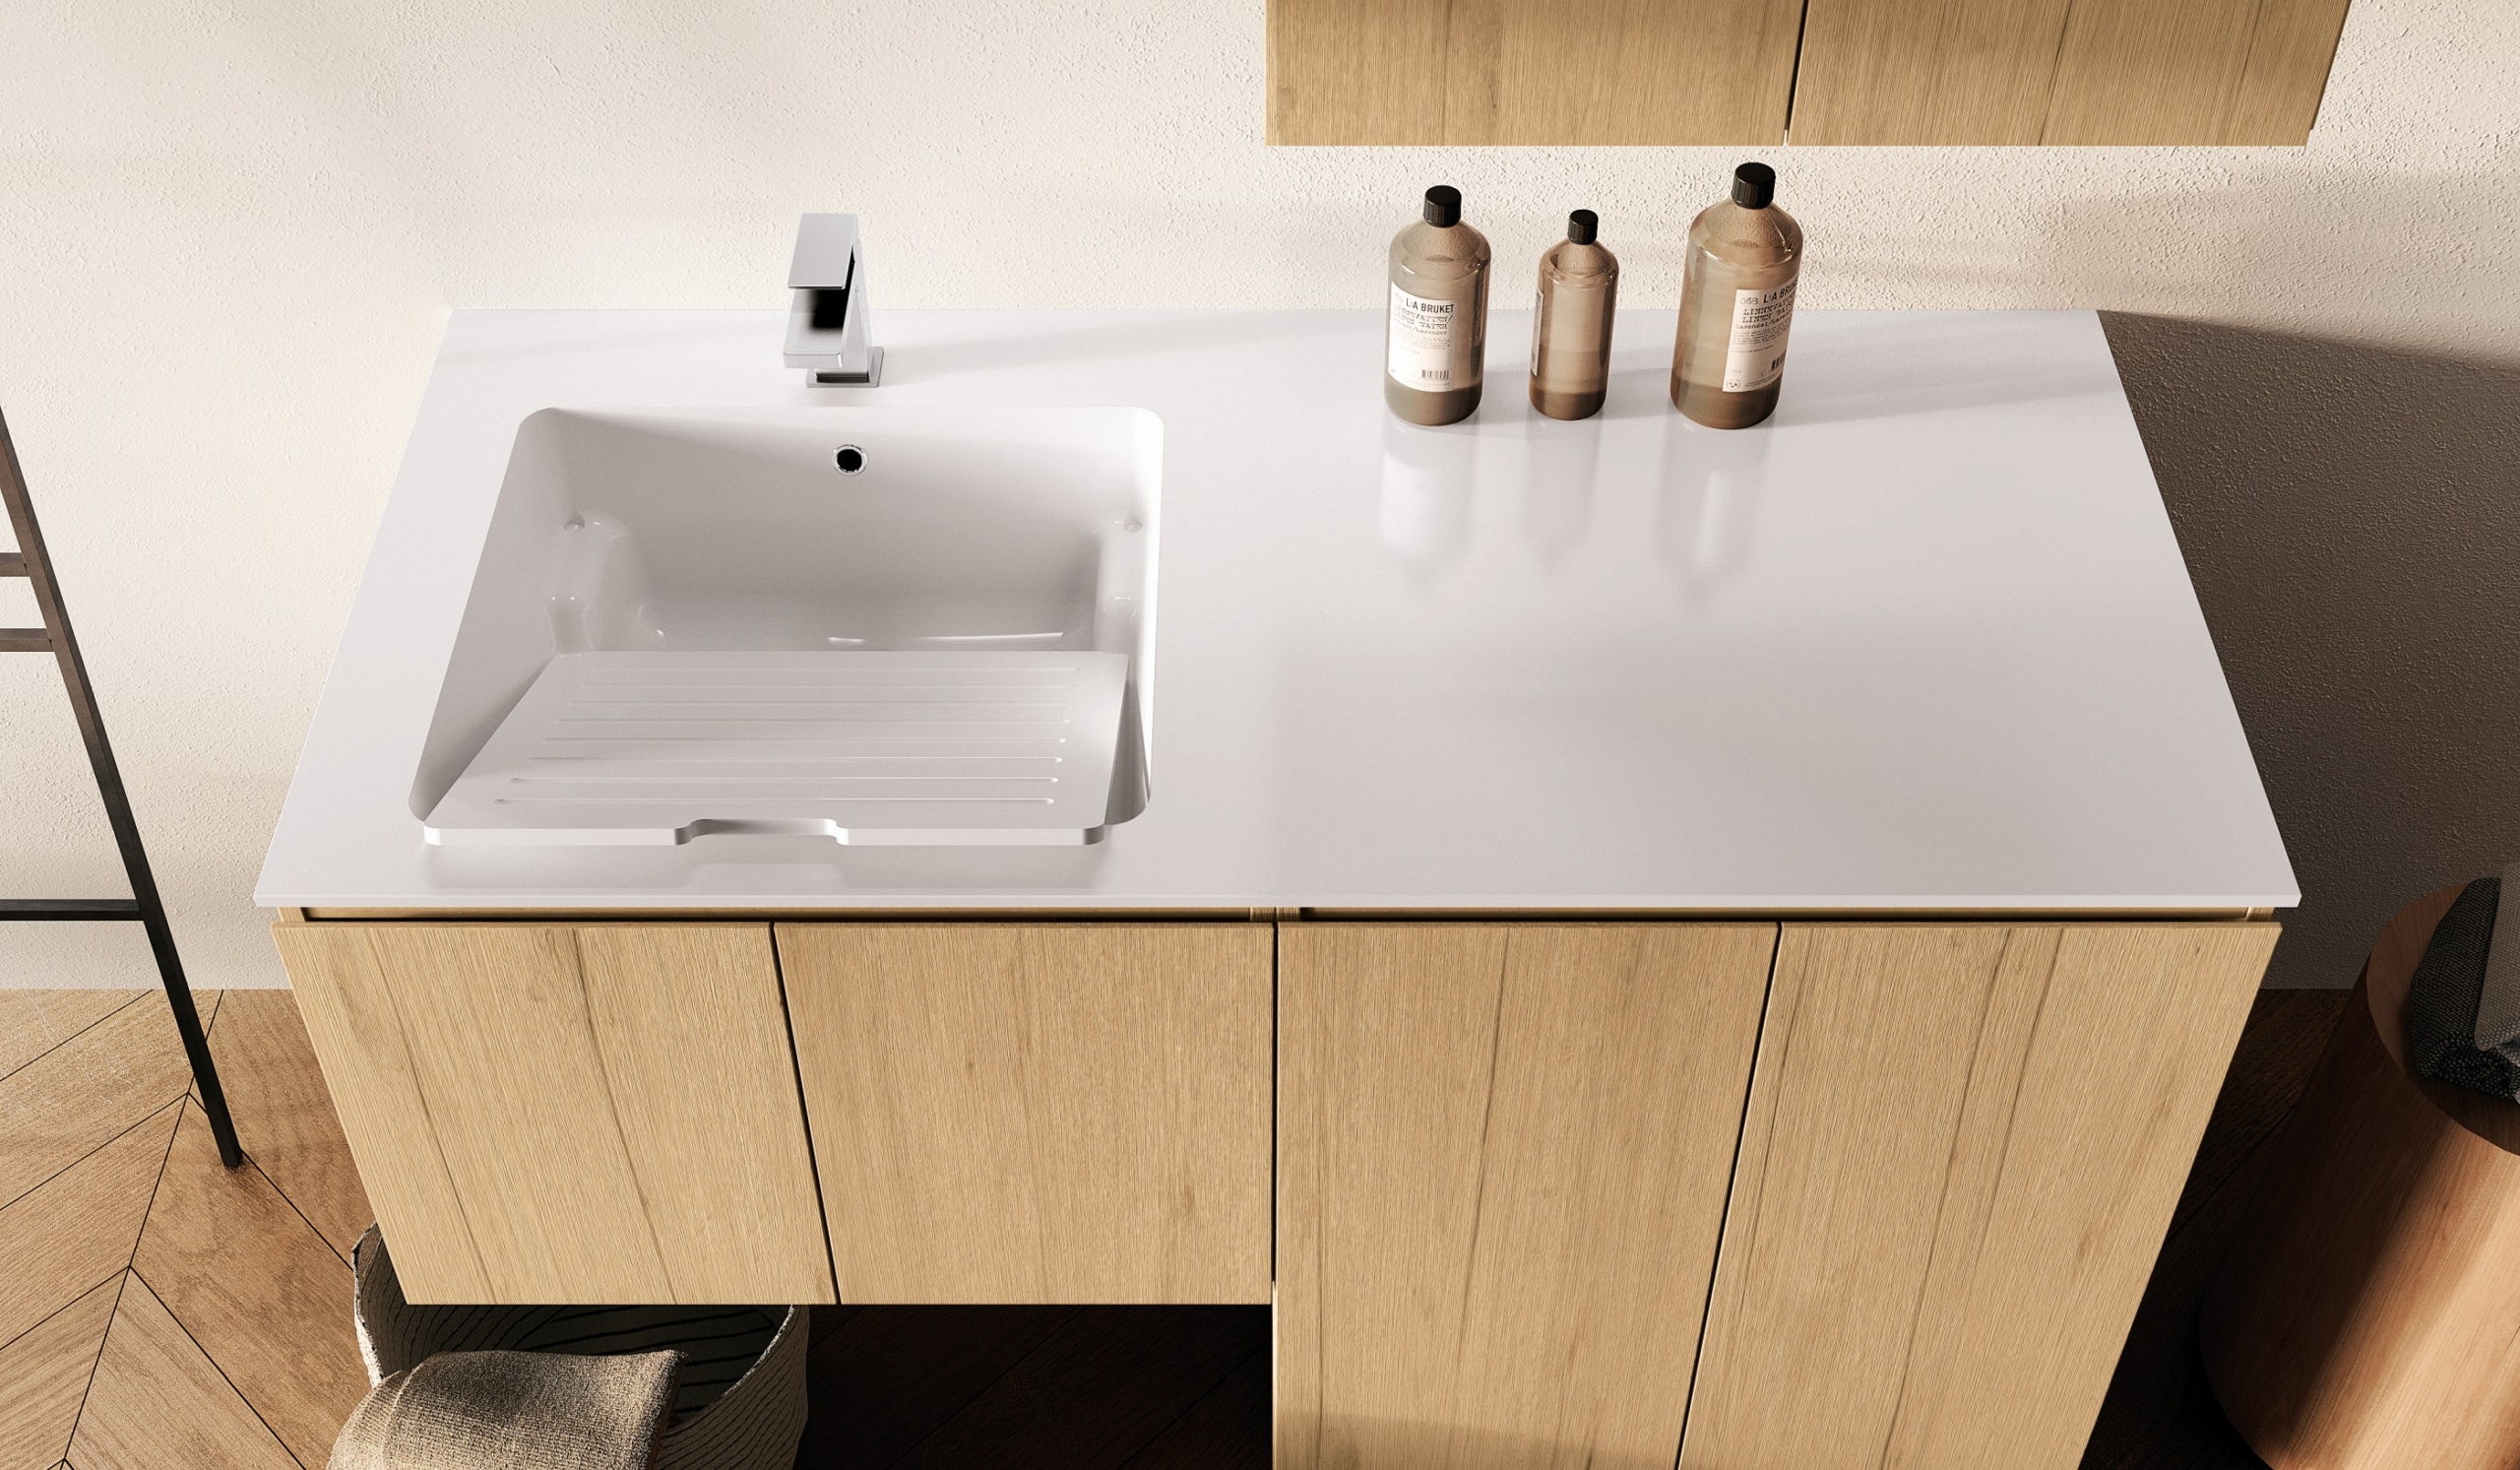 Perfekt: Das integrierte Waschbecken speziell für den Hauswirtschaftsraum - für die Vorwäsche etwa